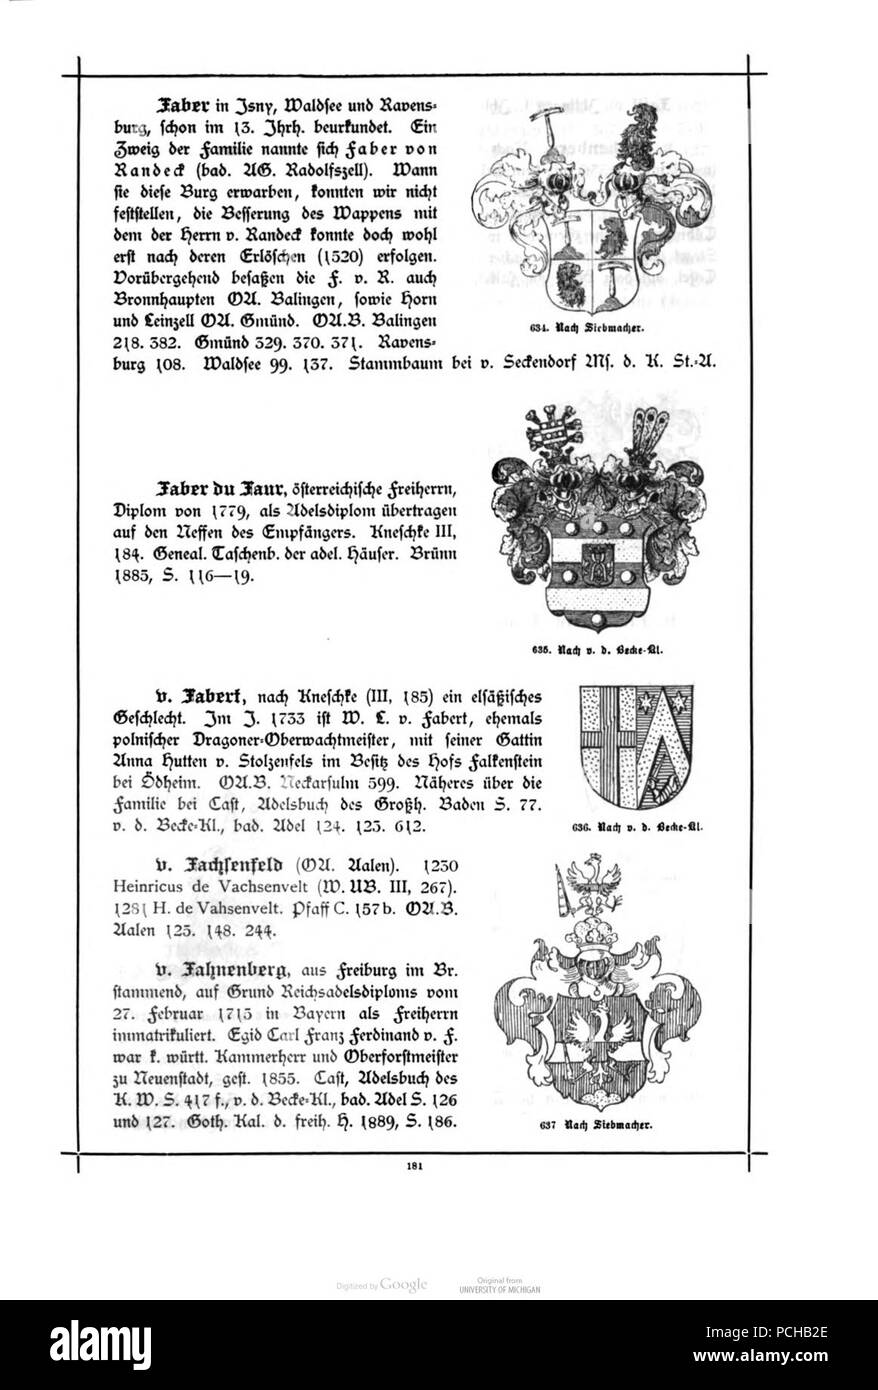 Alberti Wuerttembergisches Adels- und Wappenbuch 0181. Foto de stock